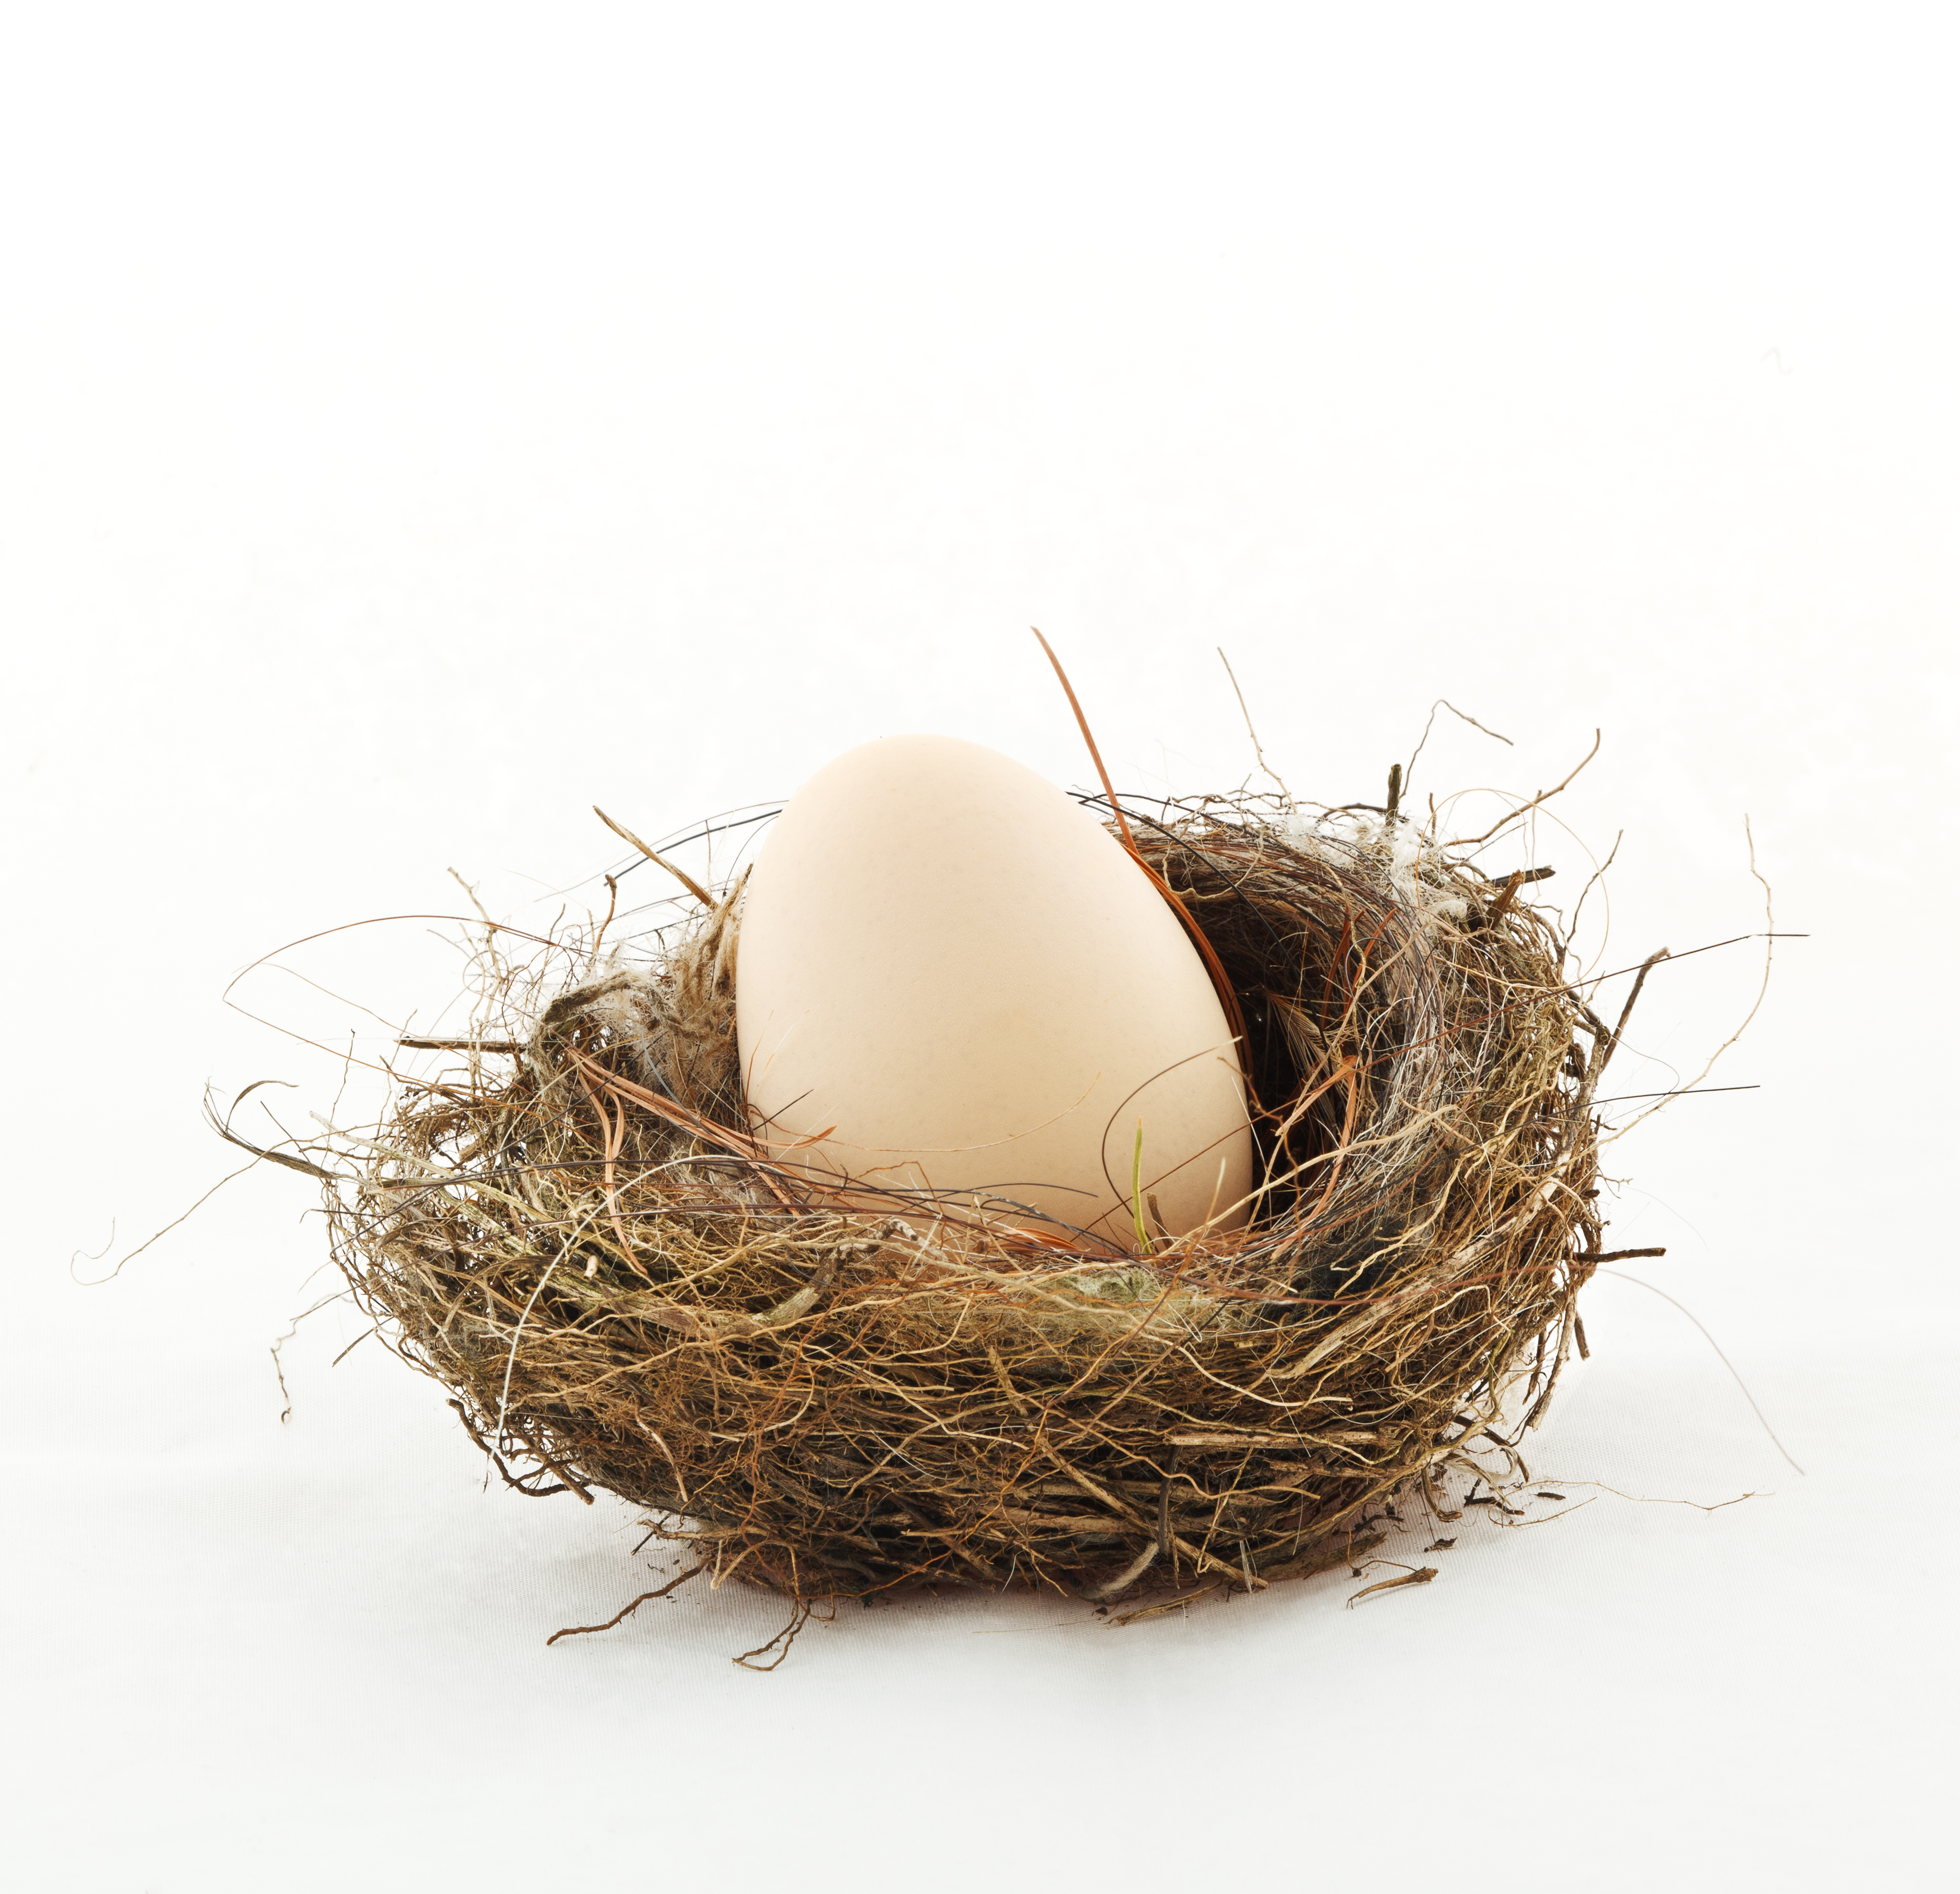 Un œuf dans un nid | Source : Shutterstock